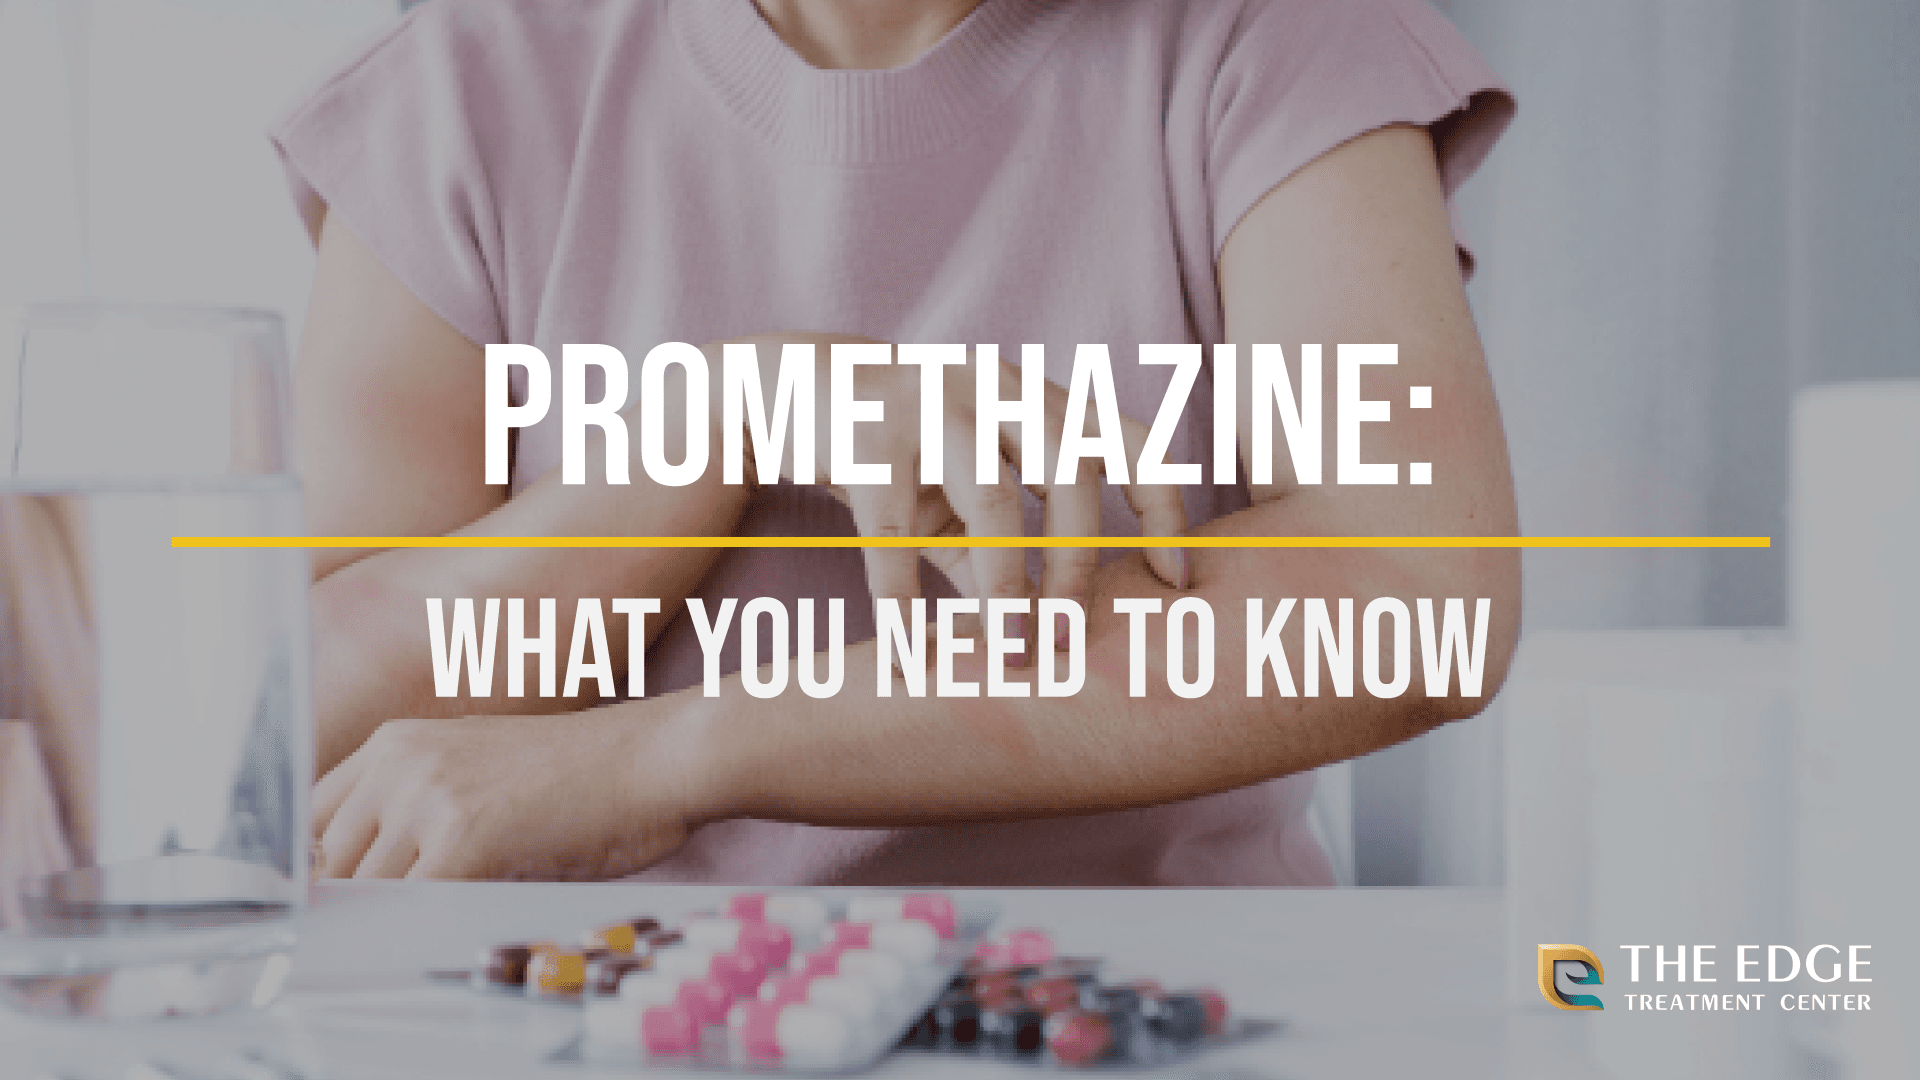 What is Promethazine?